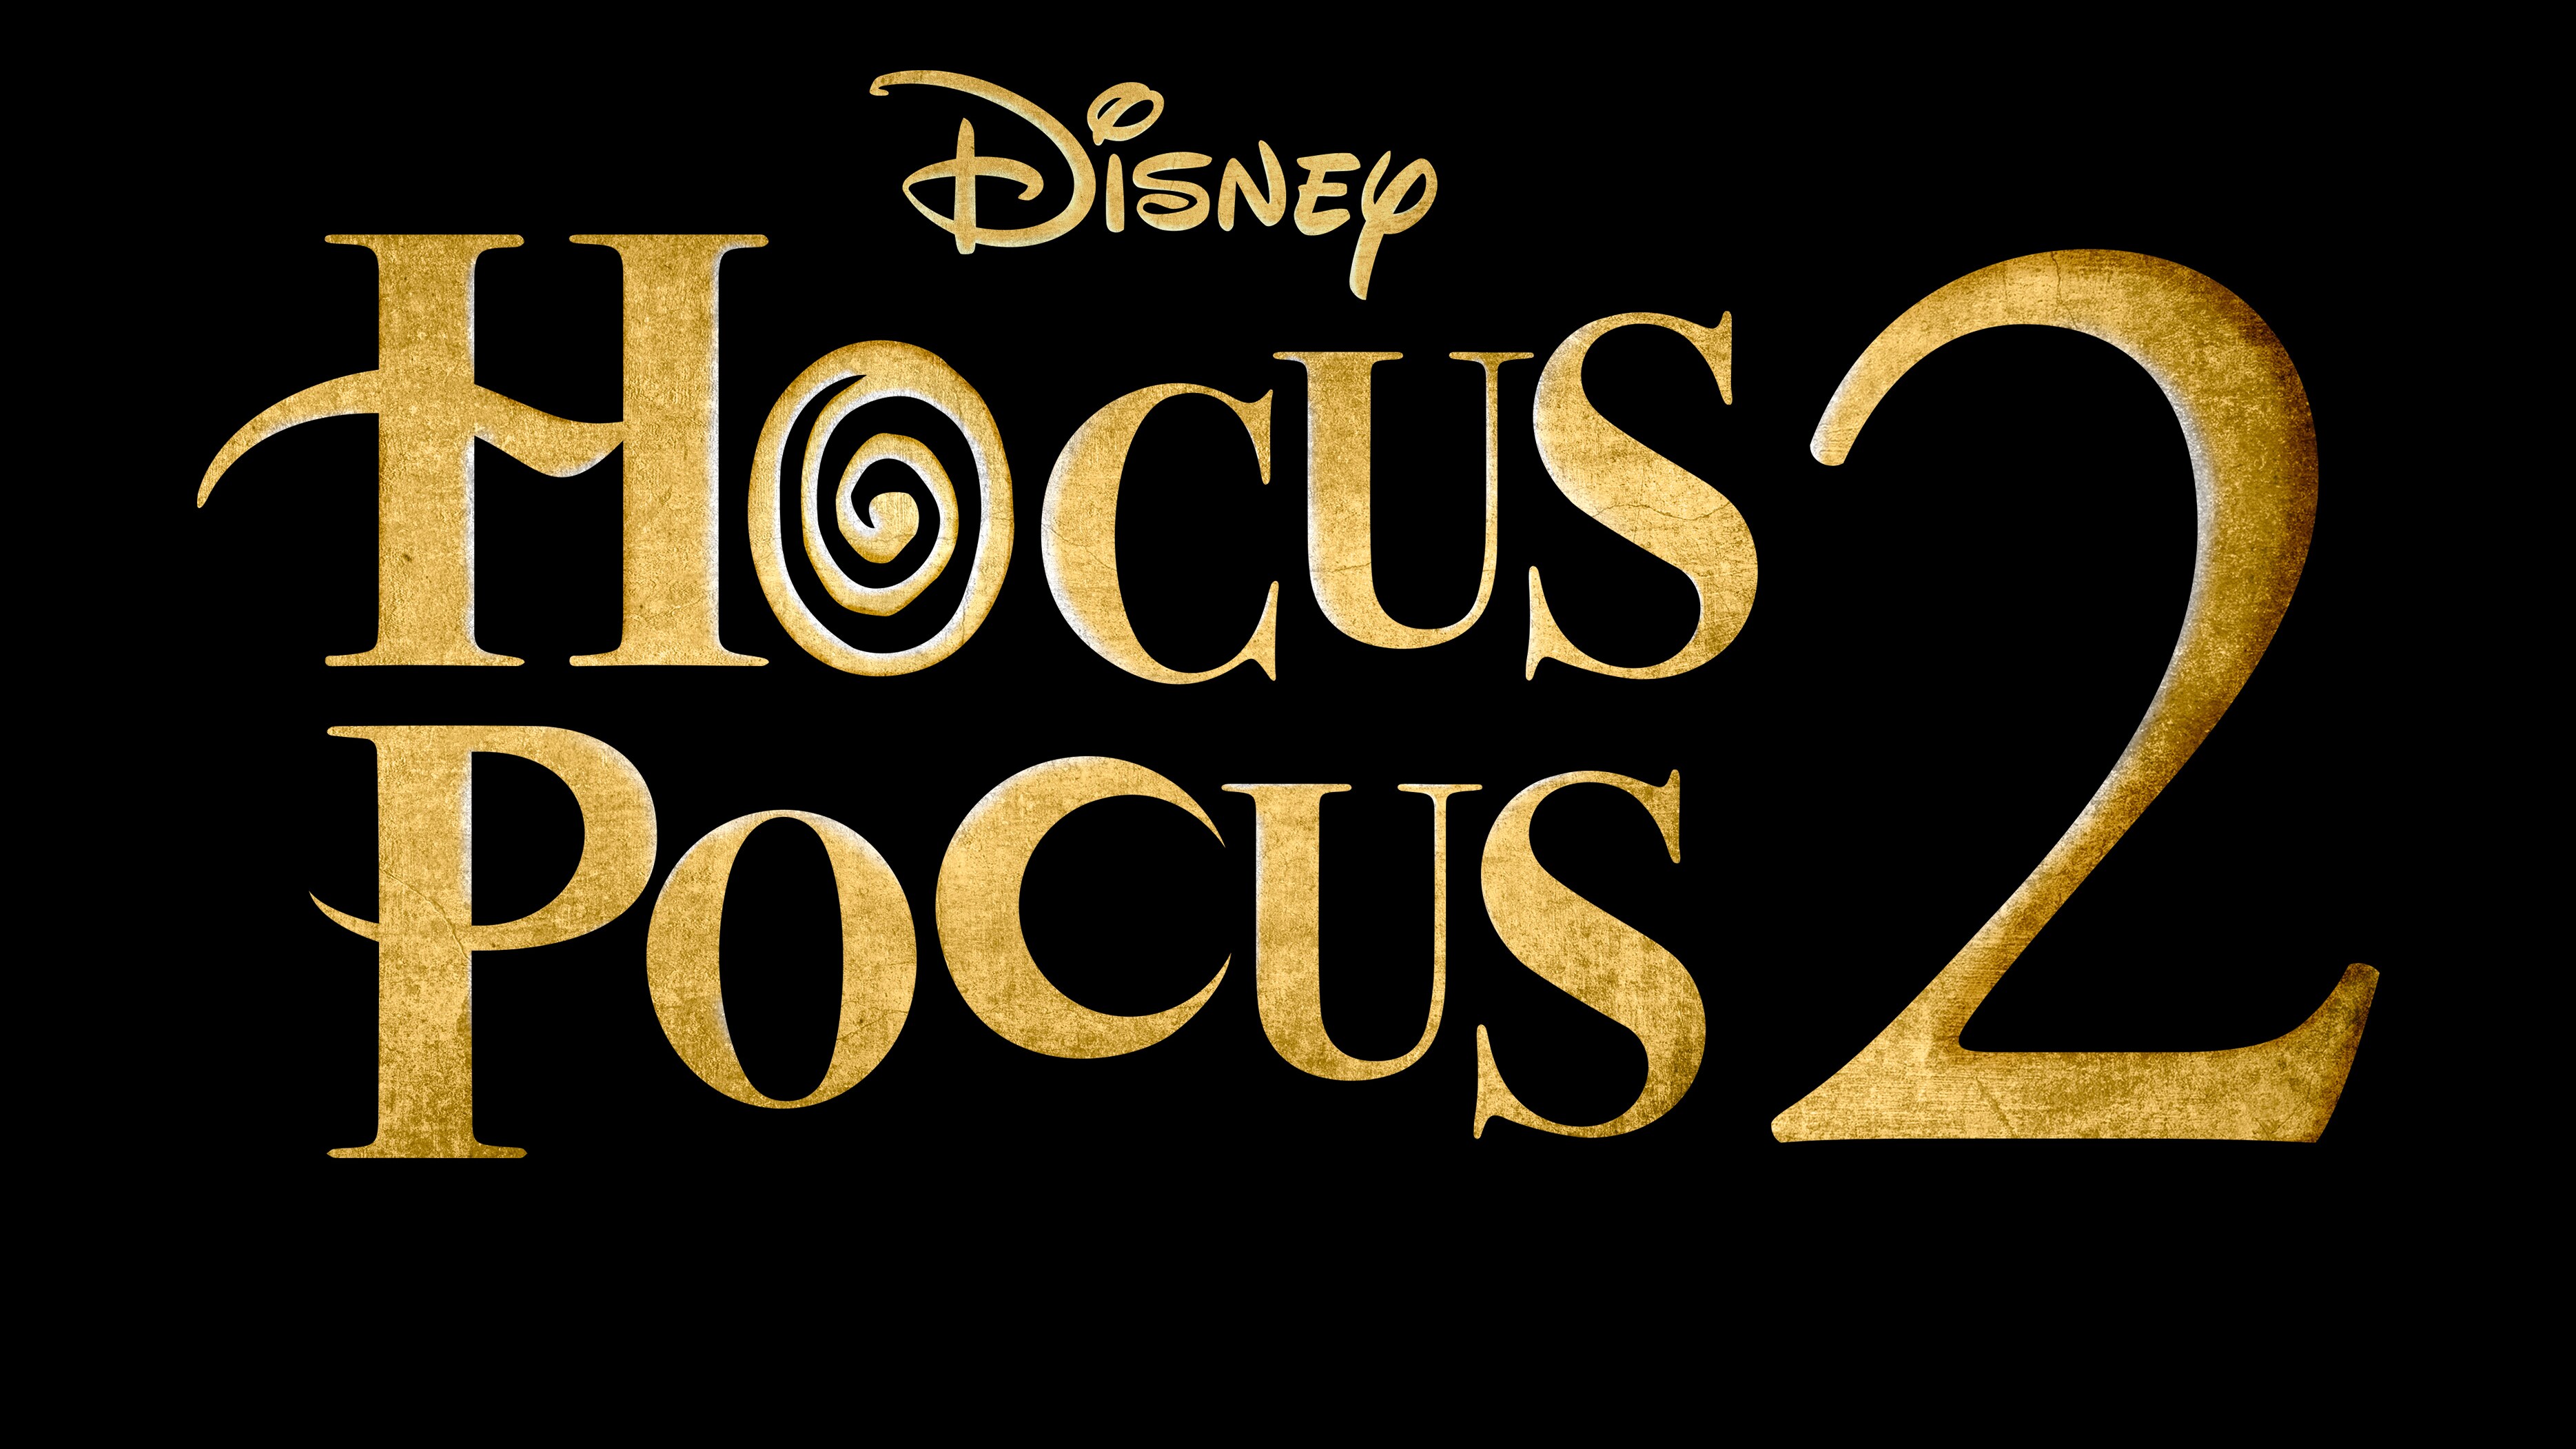 Hocus Pocus logo.